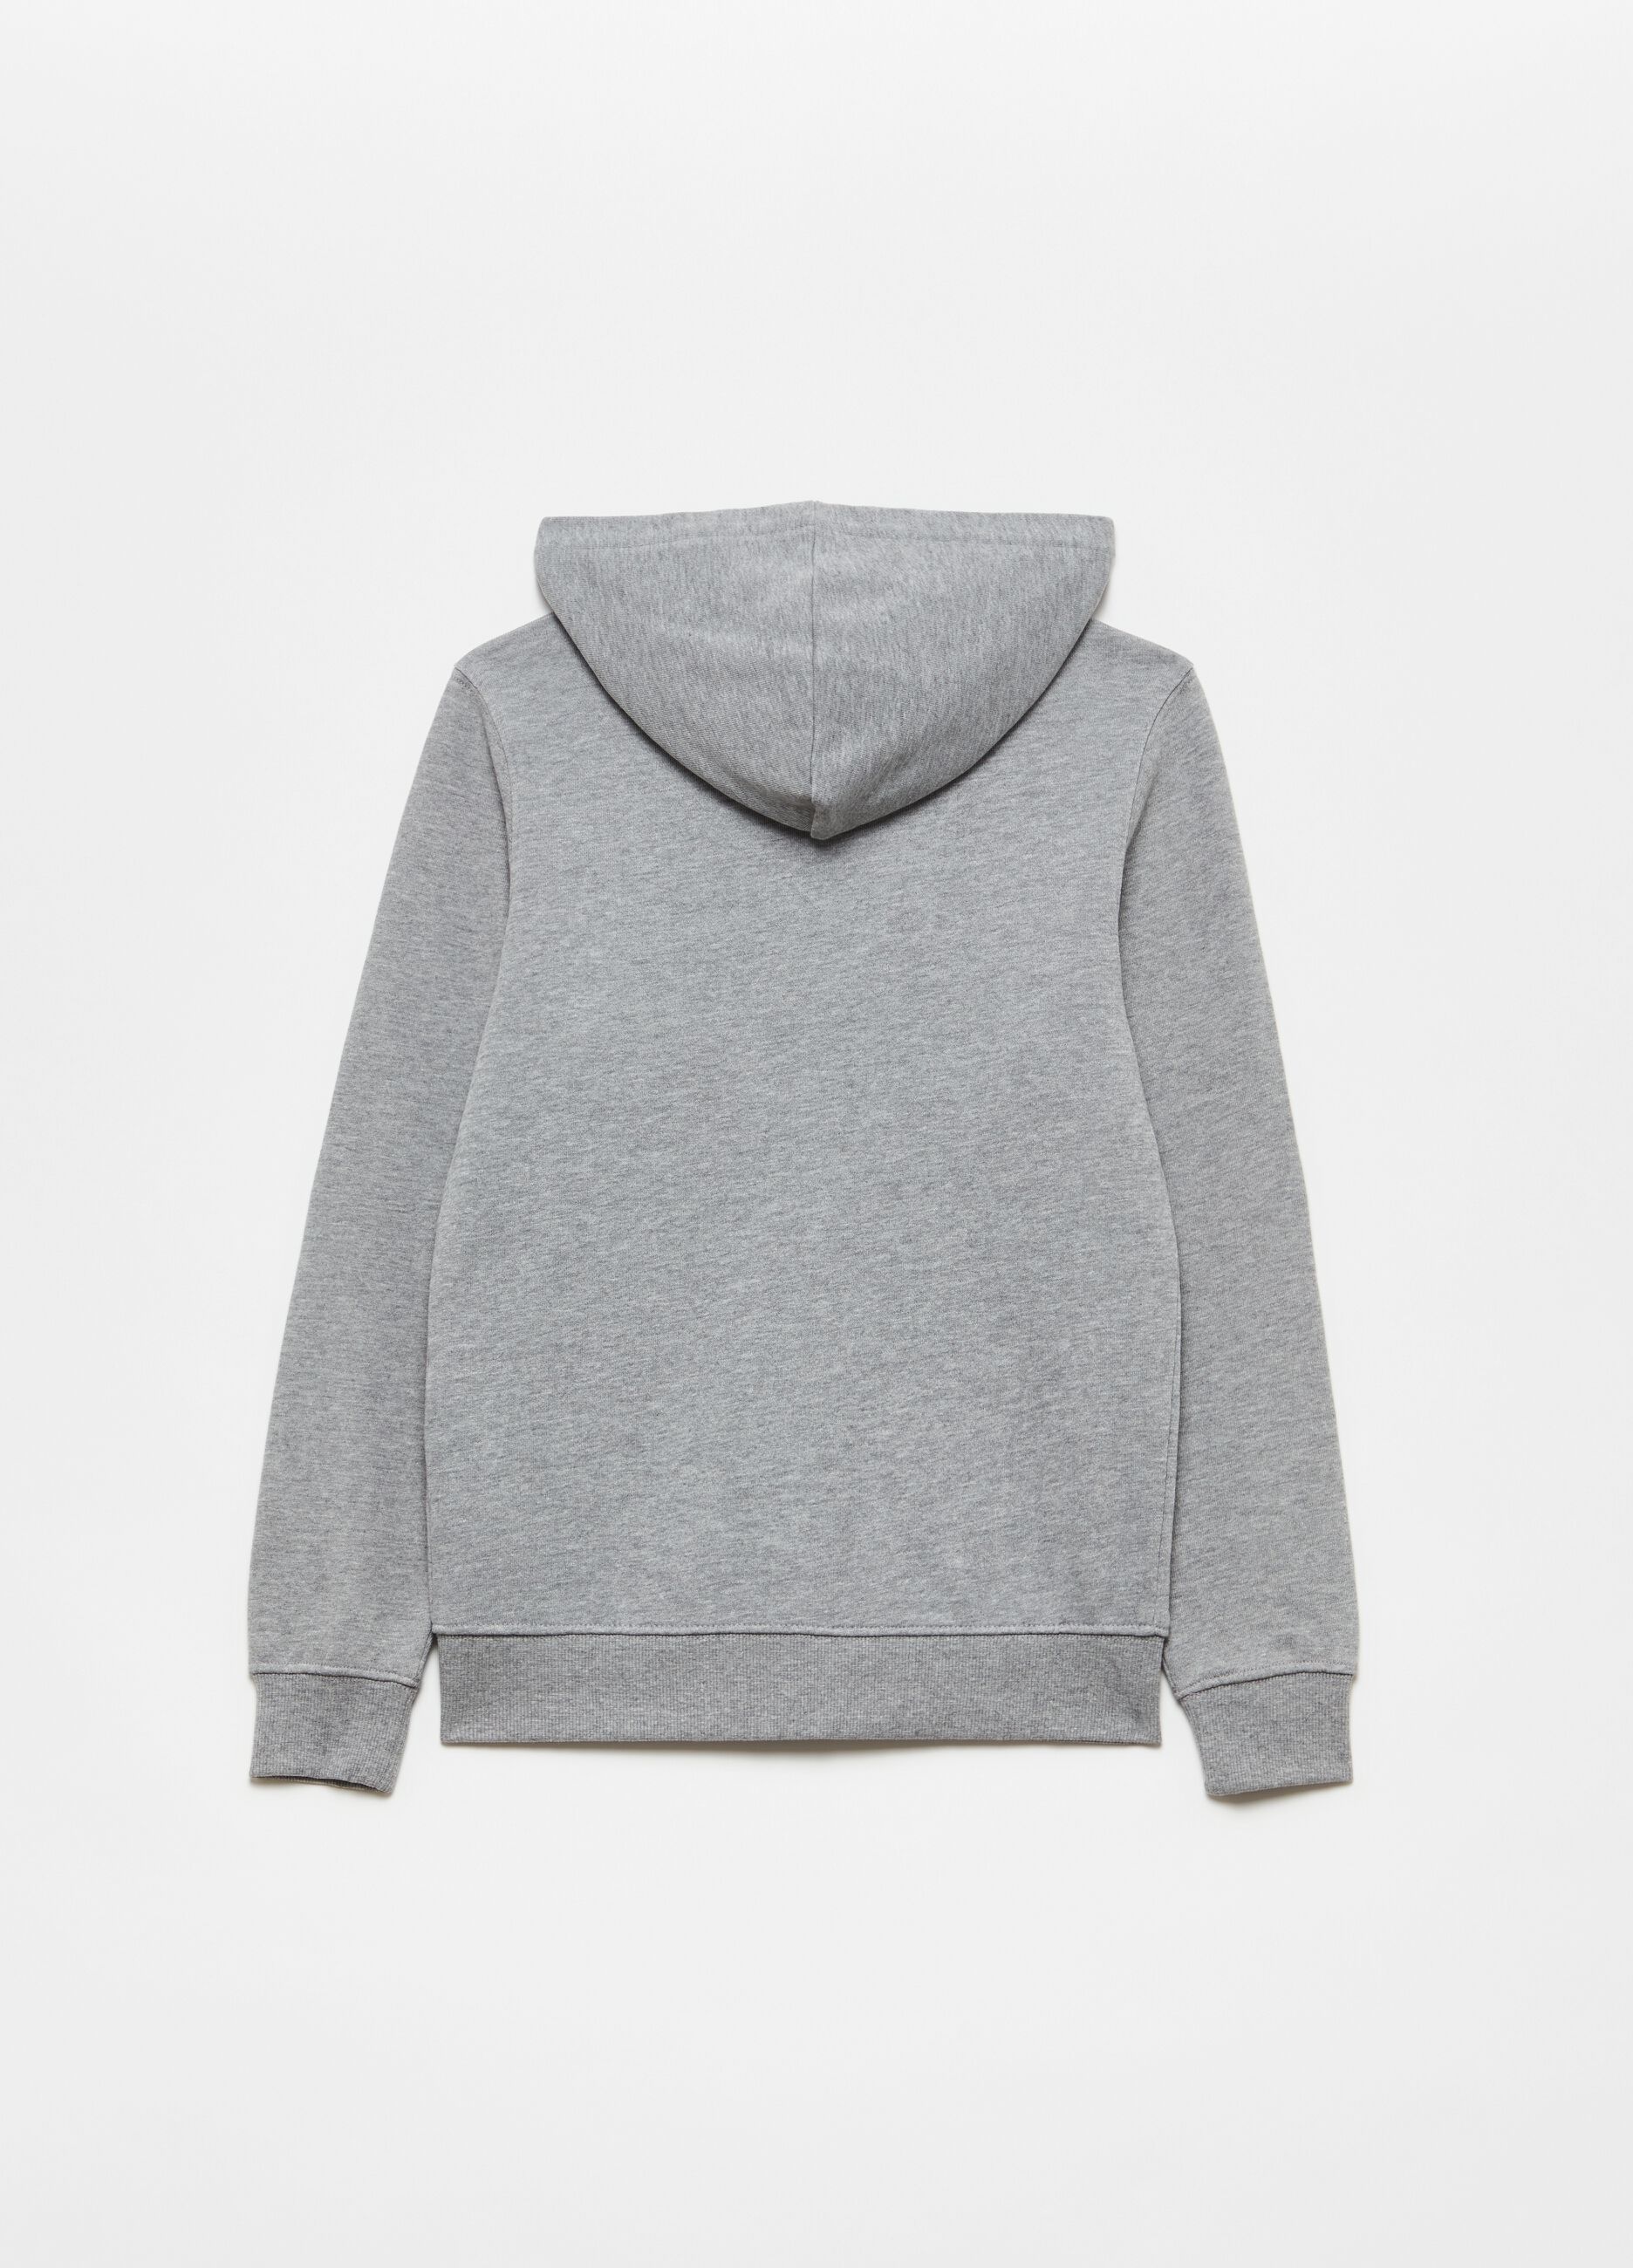 Full-zip sweatshirt with hood and pocket